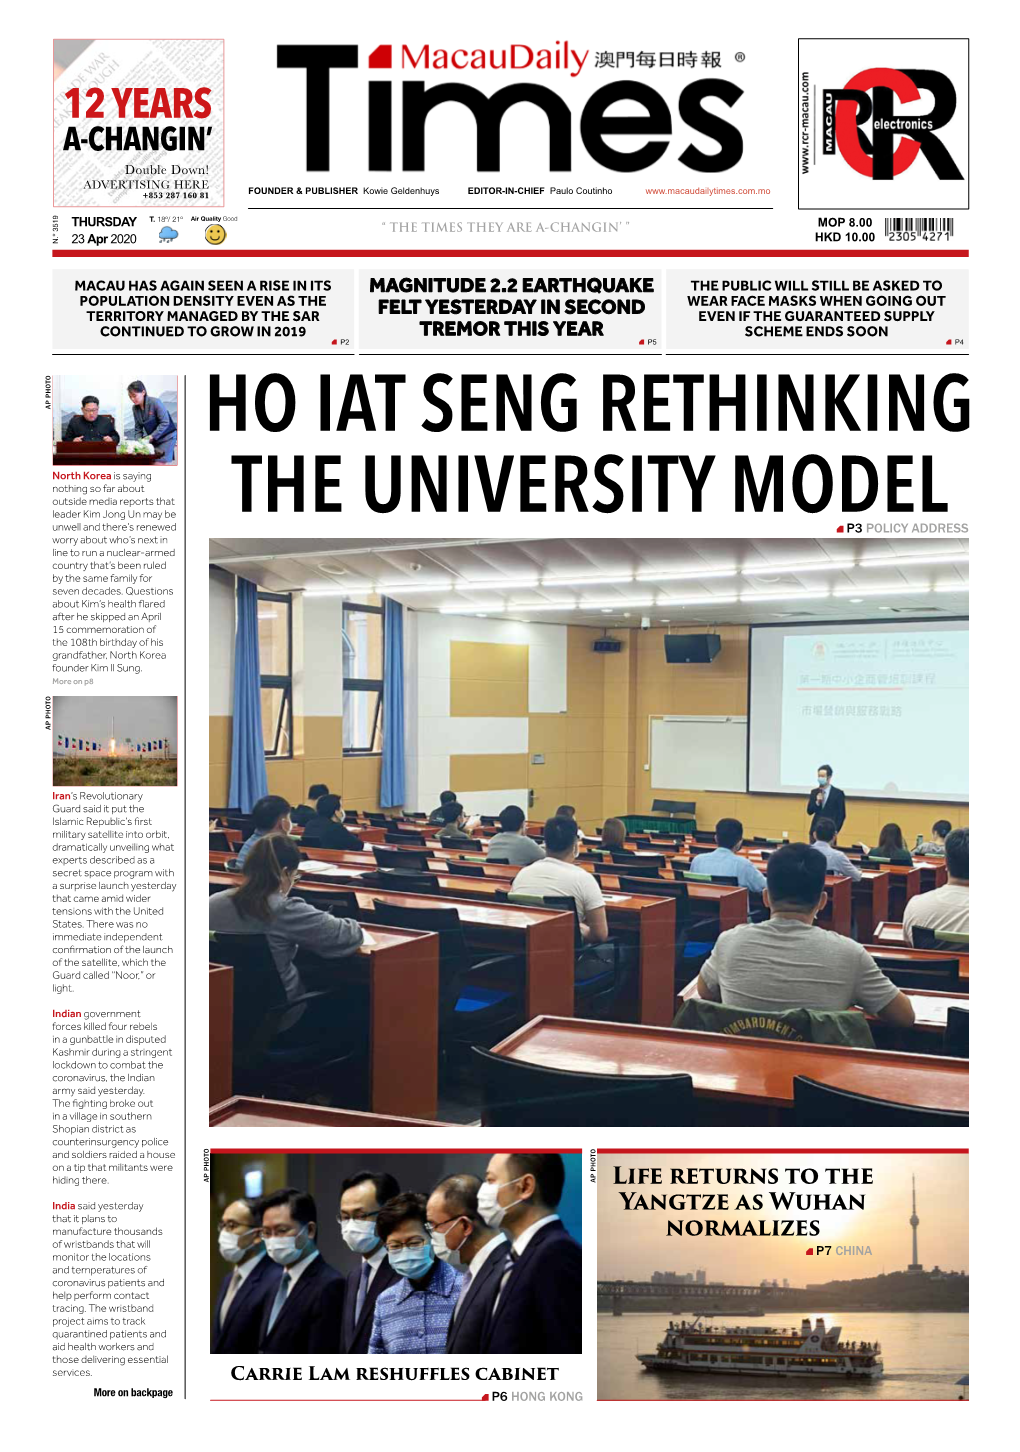 Ho Iat Seng Rethinking the University